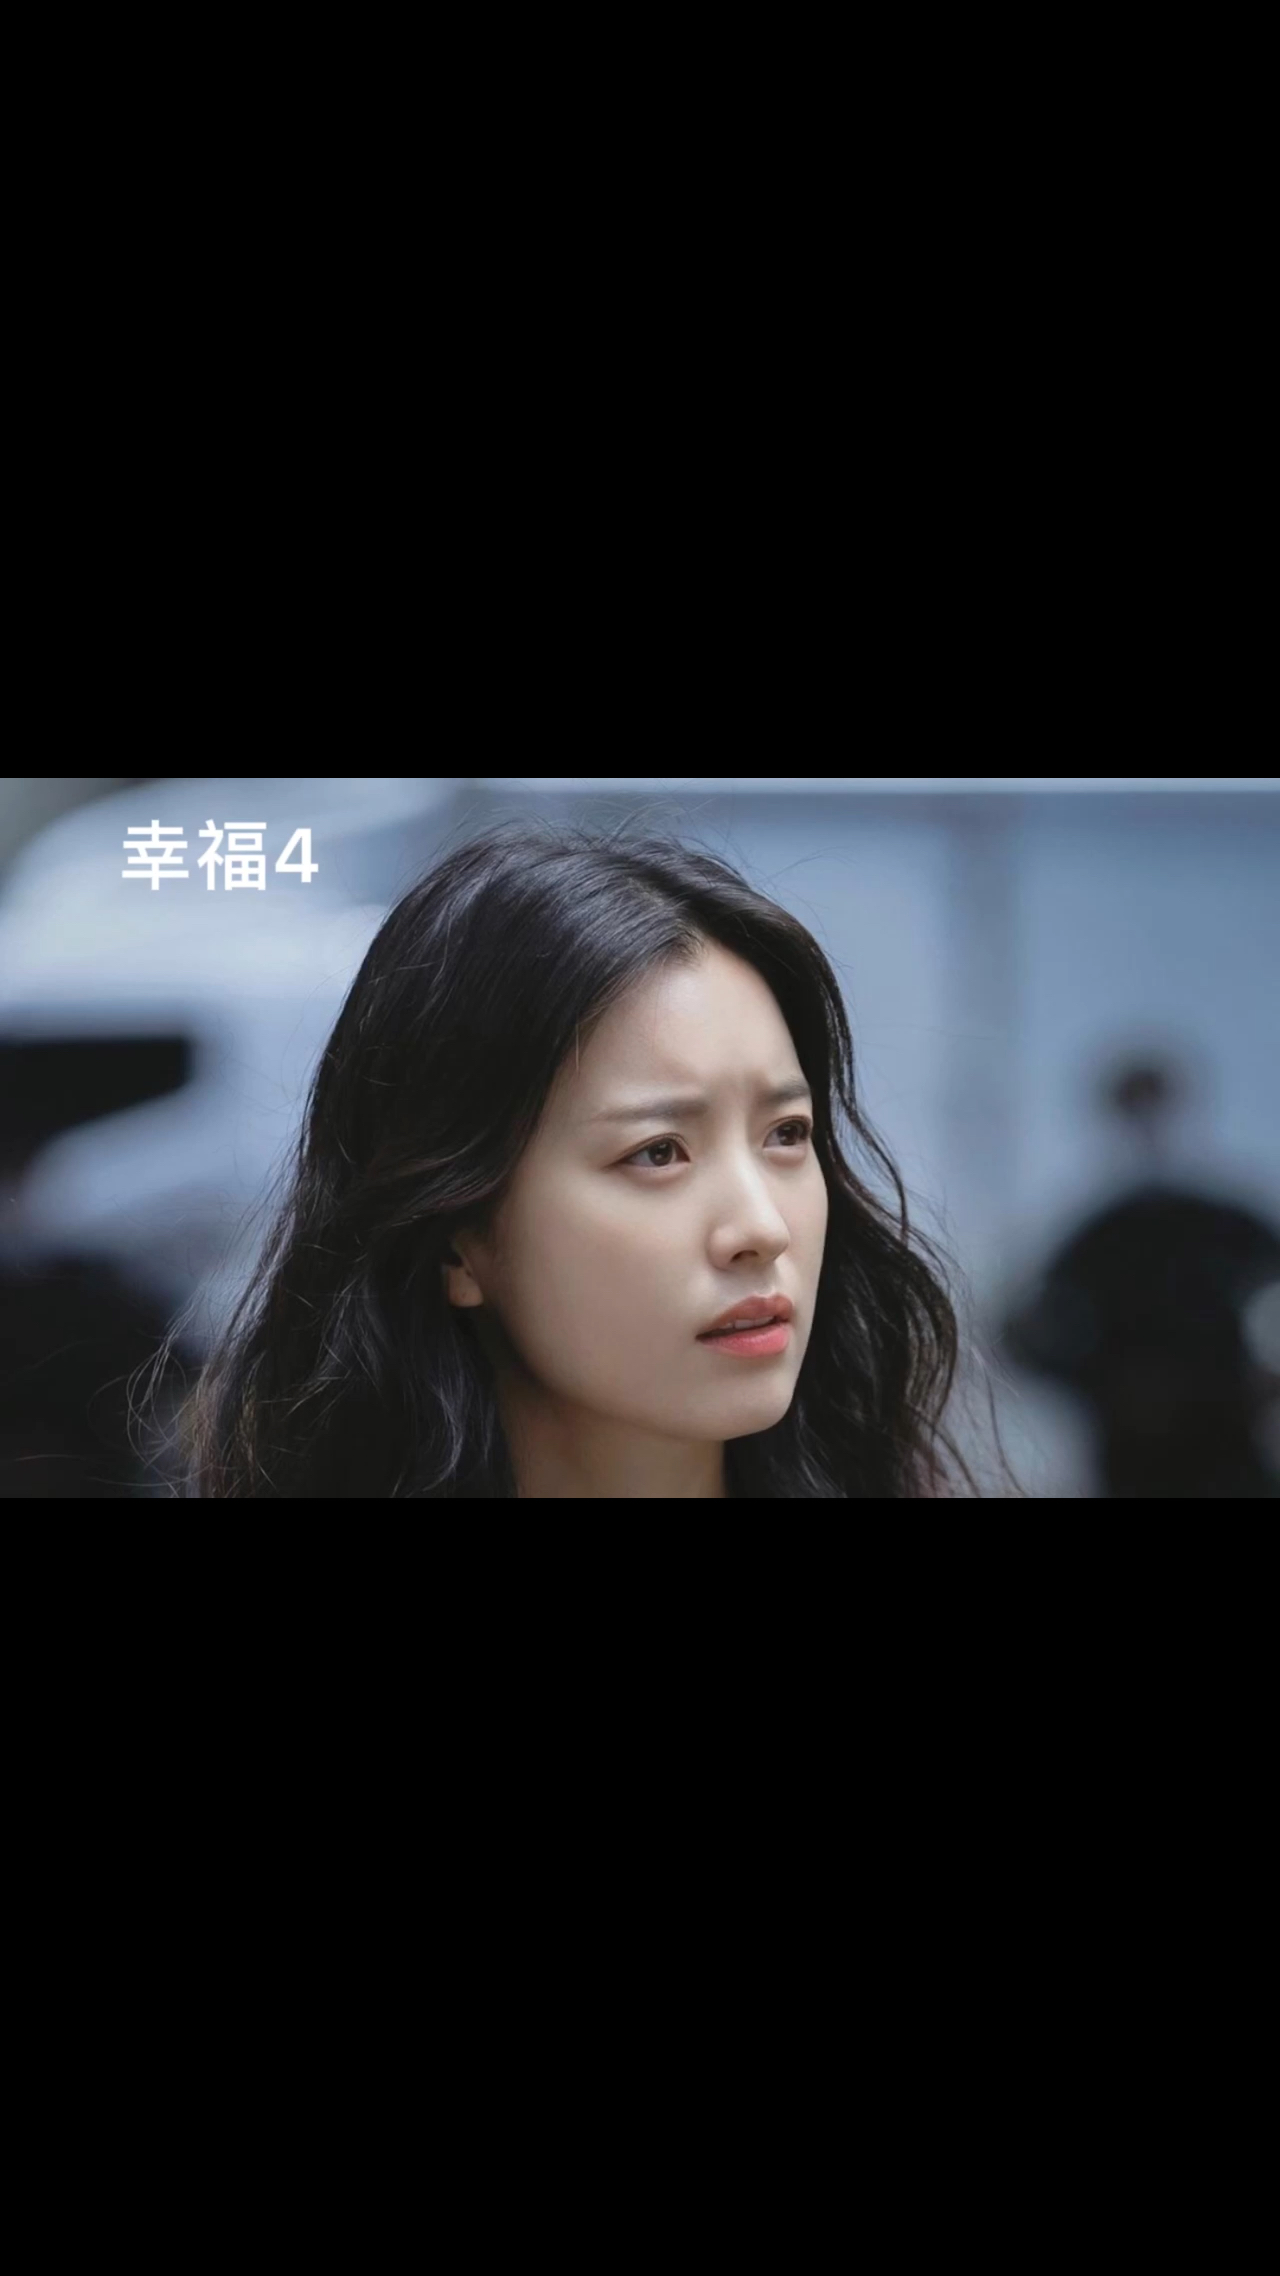 韩剧幸福第四集,丧尸病毒全面爆发,他们要怎么面对呢?